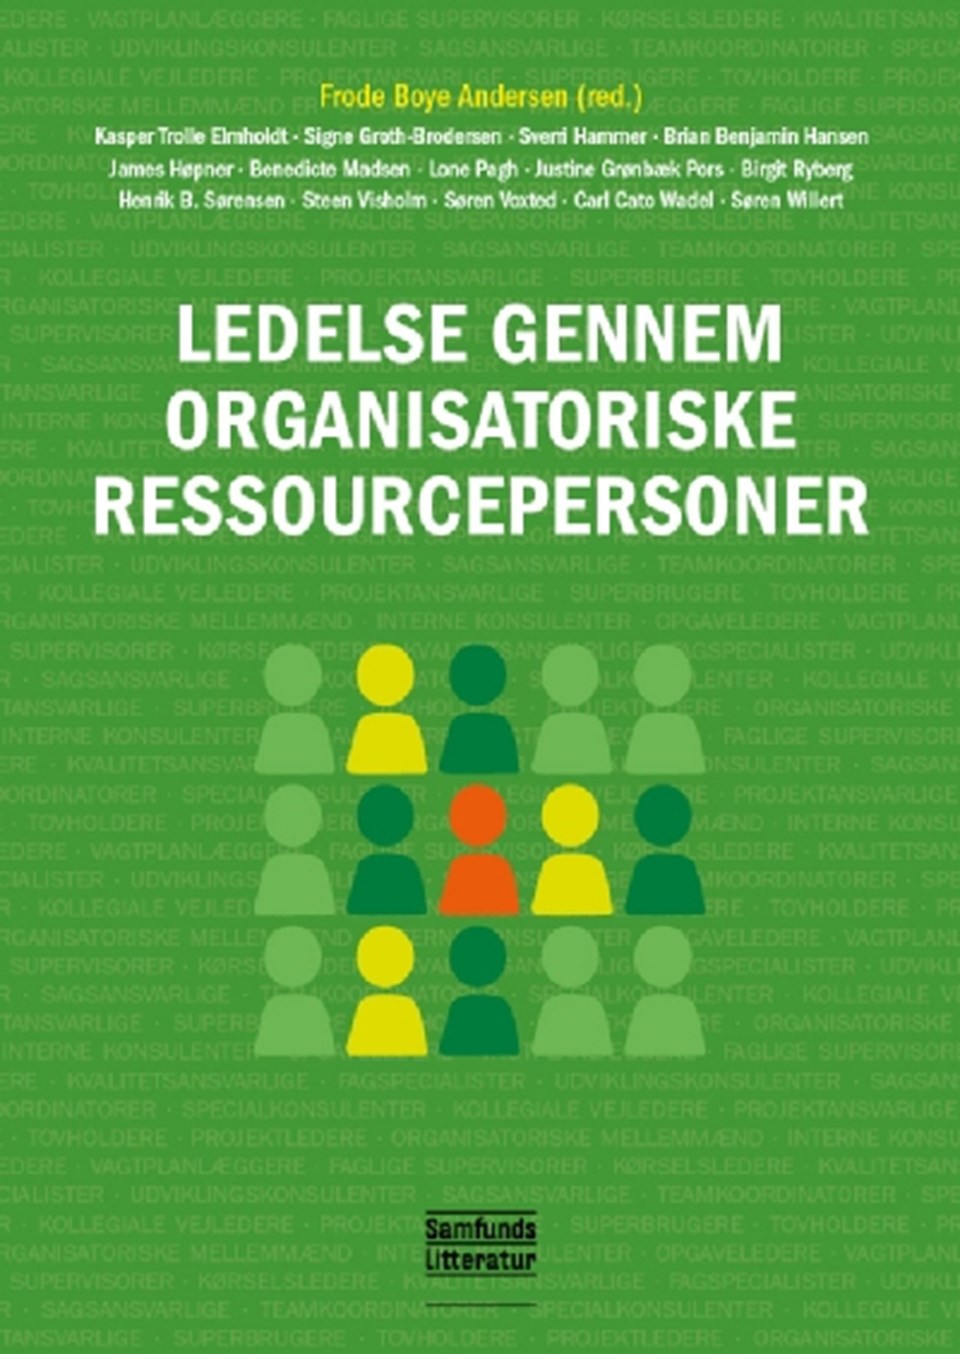 Ledelse gennem organisatoriske ressourcepersoner